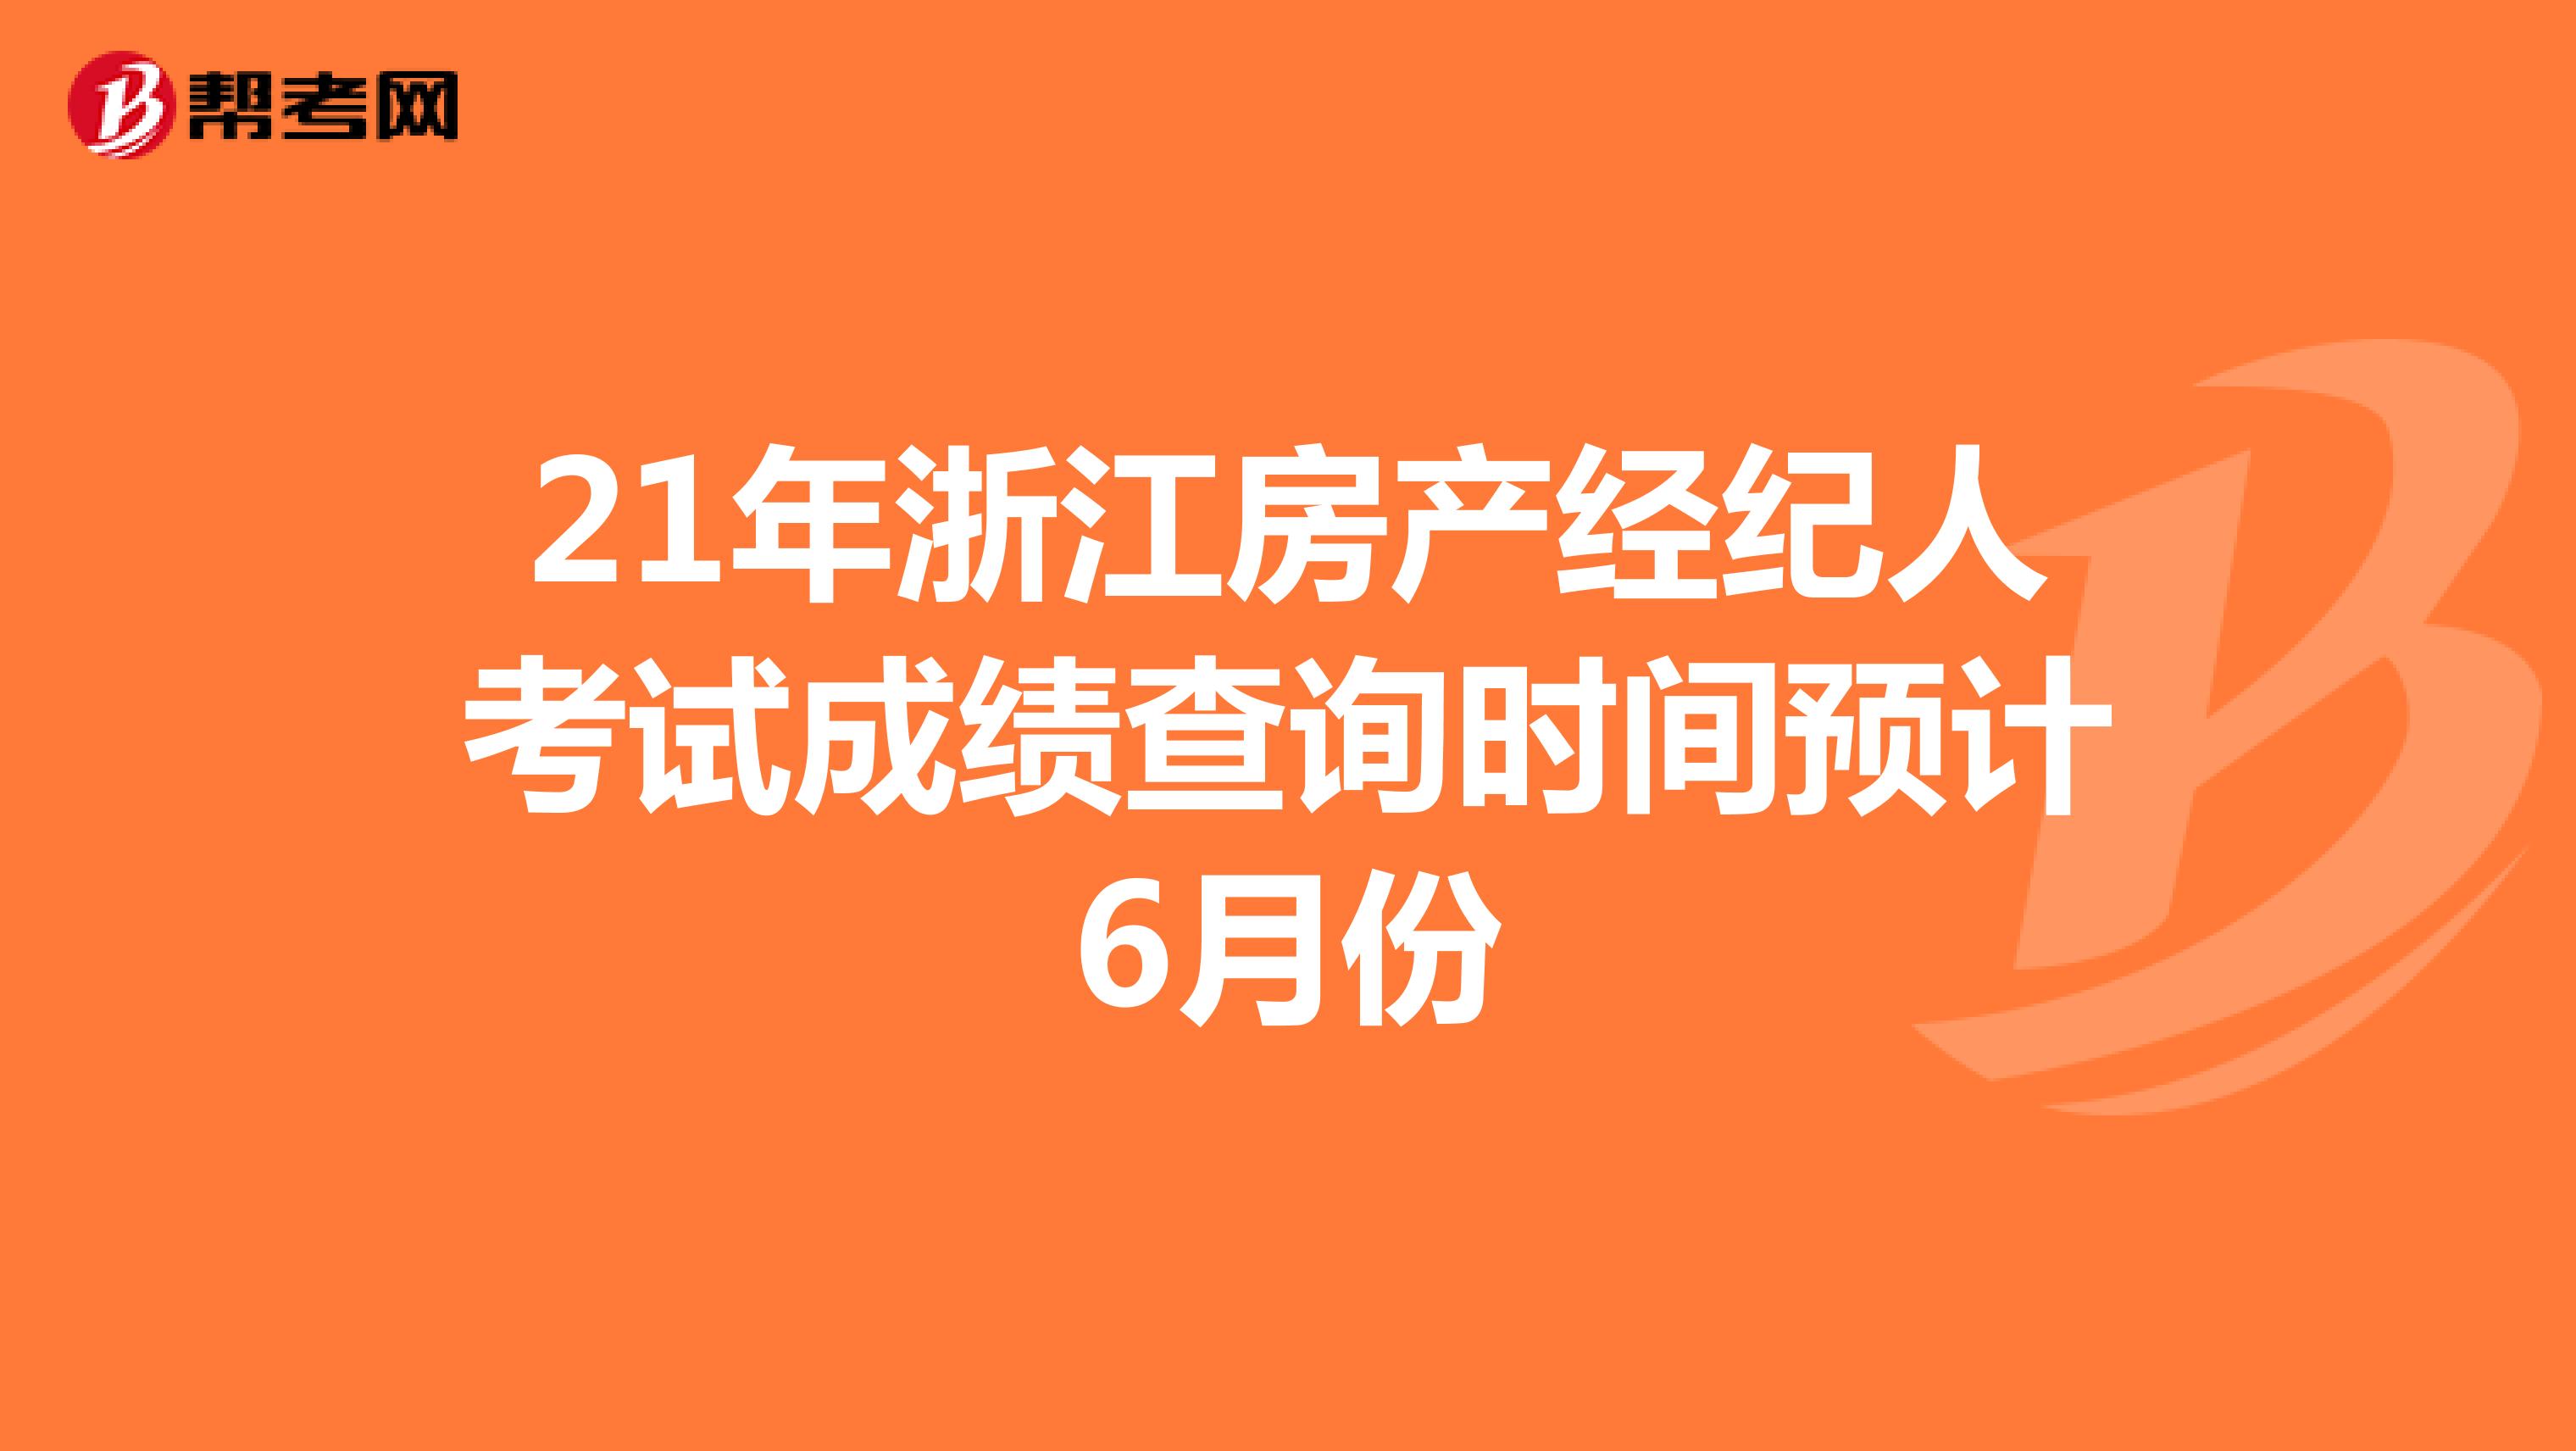 21年浙江房产经纪人考试成绩查询时间预计6月份